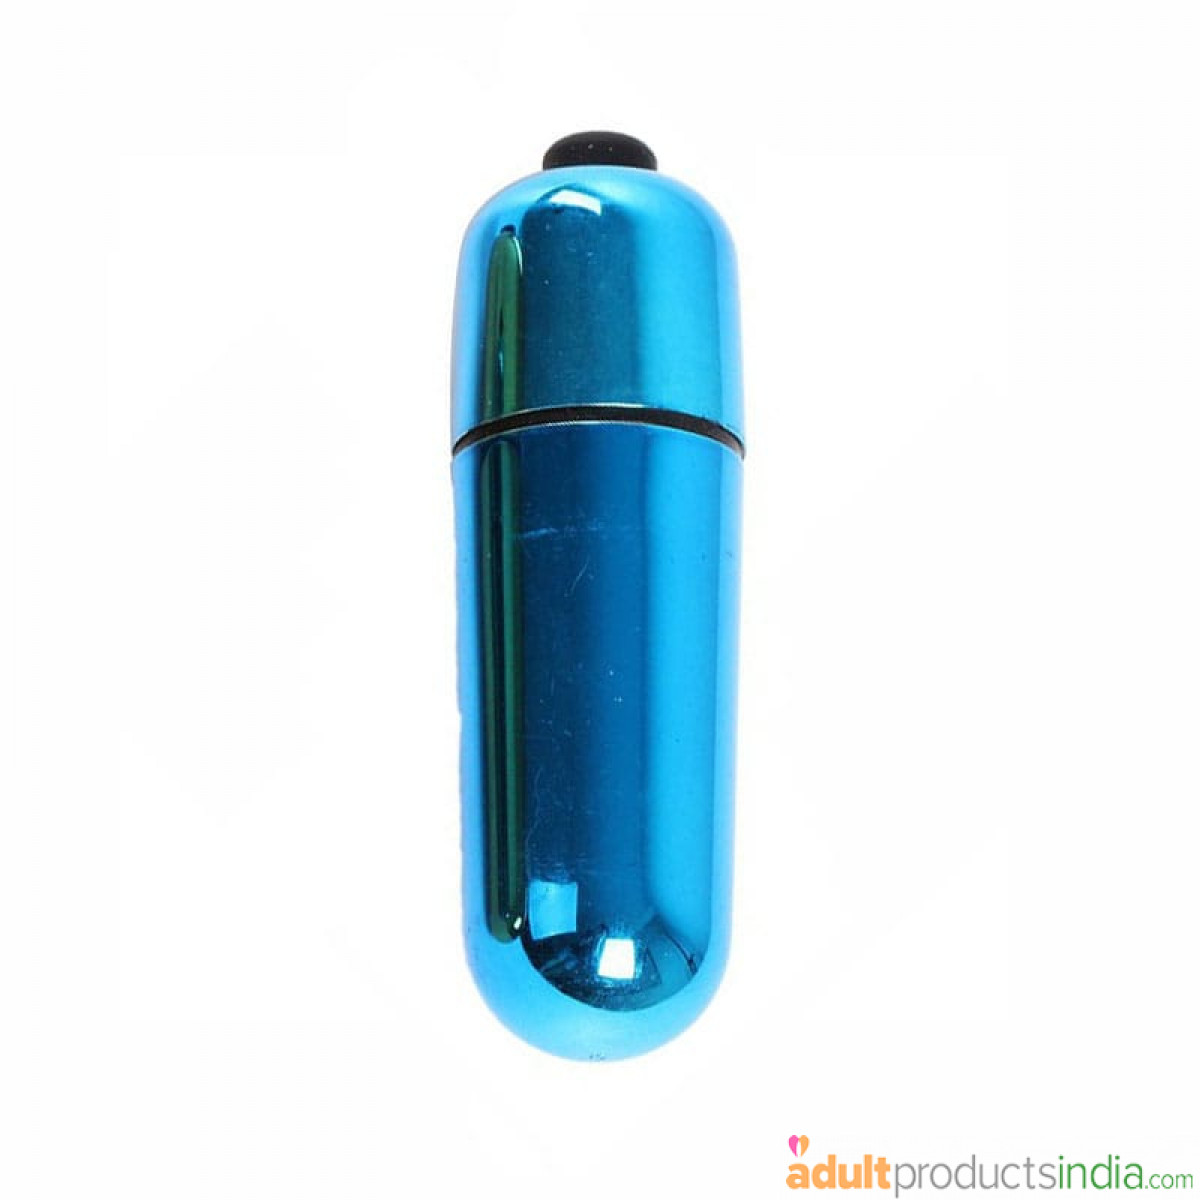 Mini Bullet Vibrator - blue